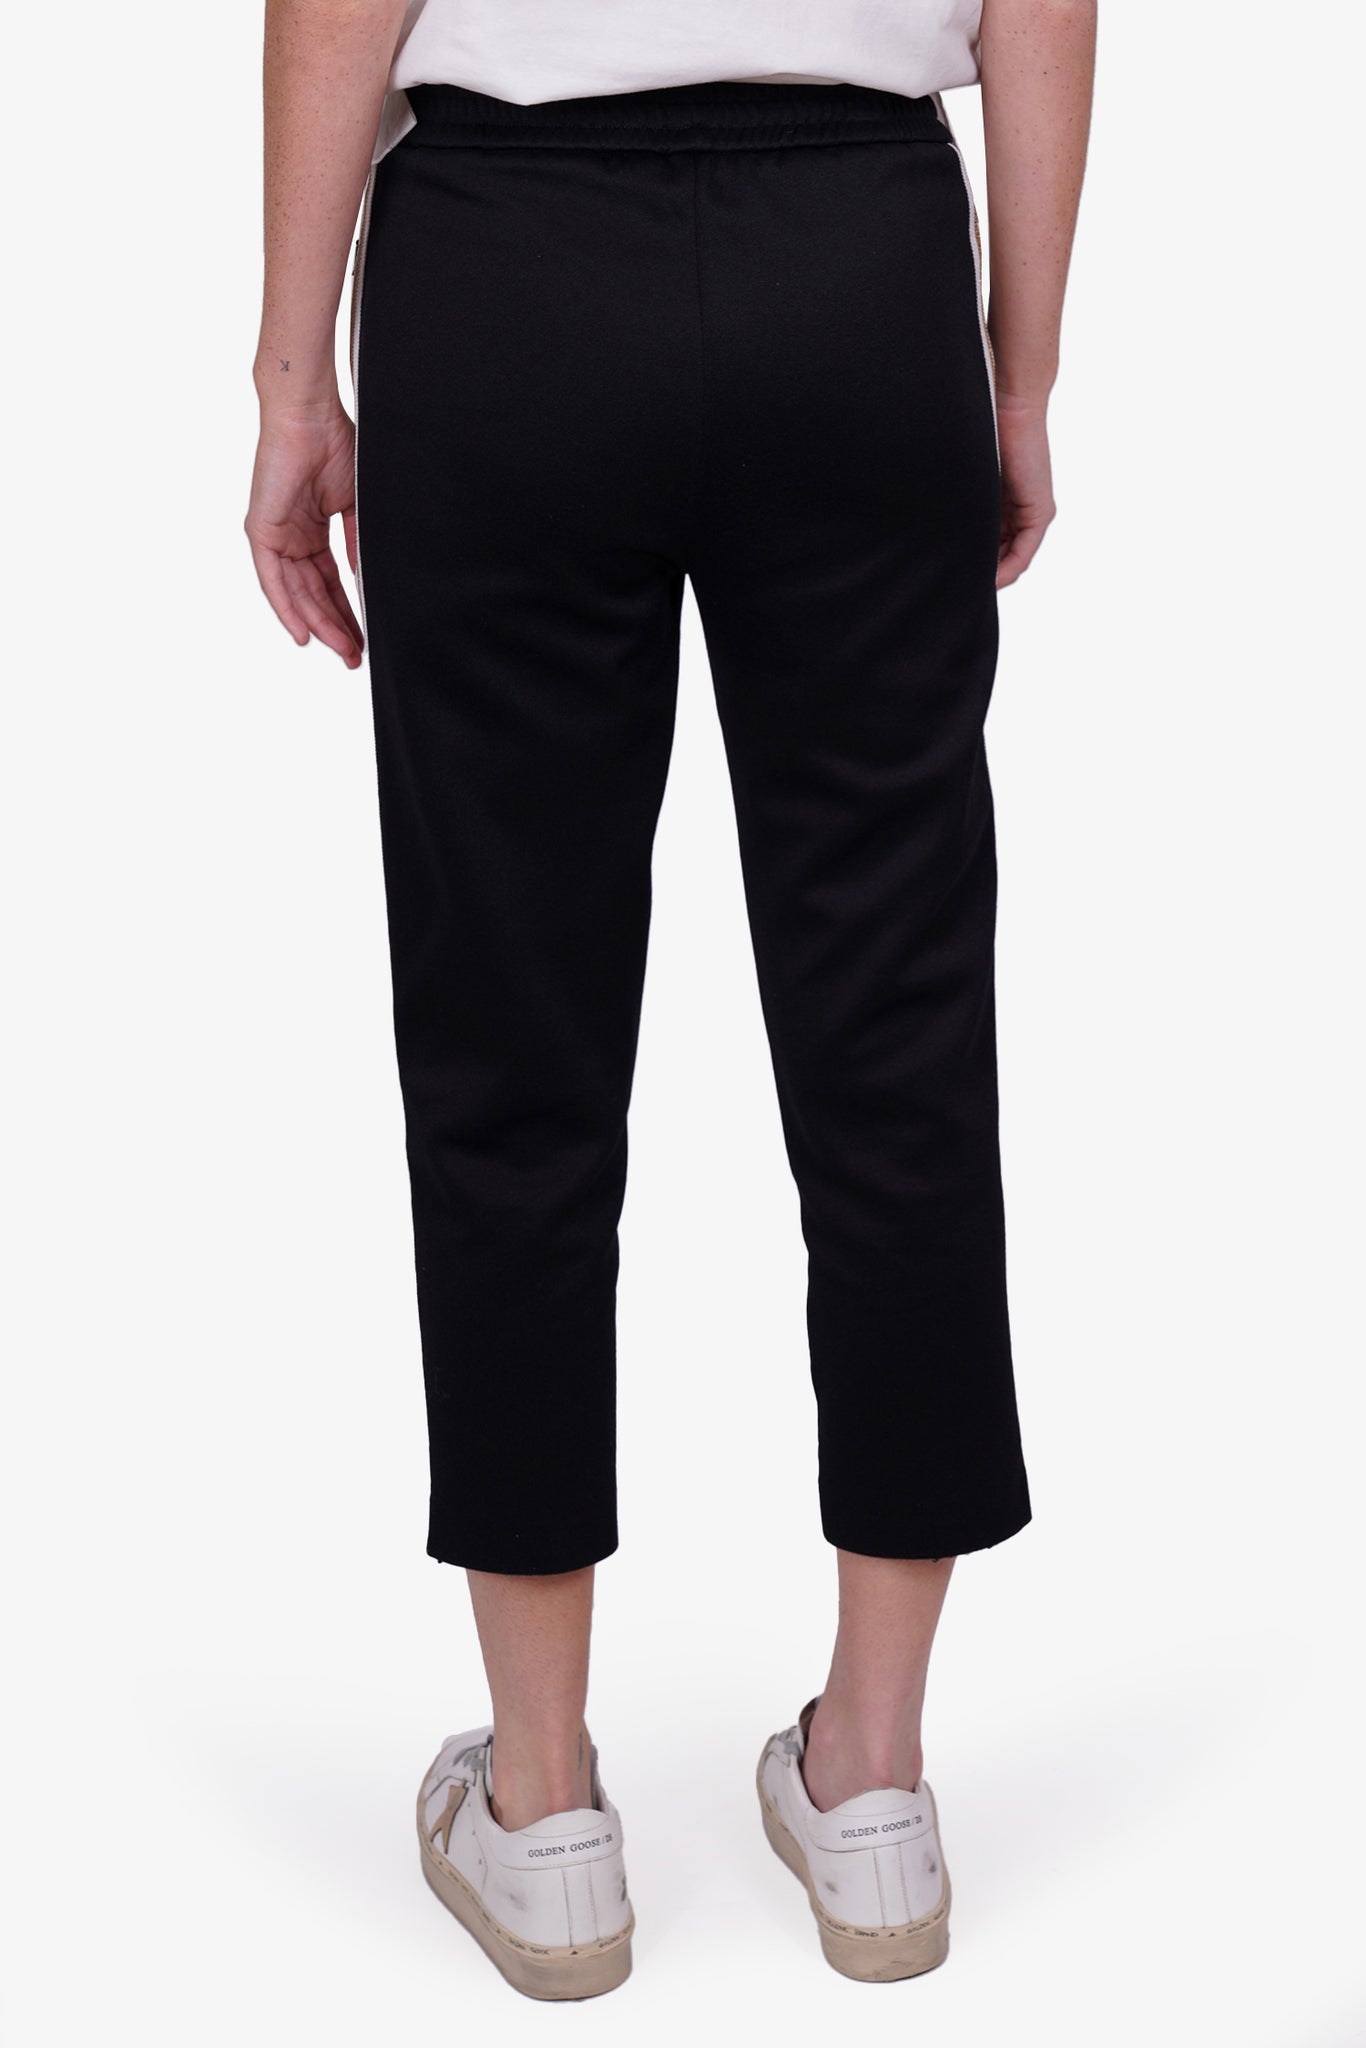 Moncler Black Gold Striped Pants Size XS